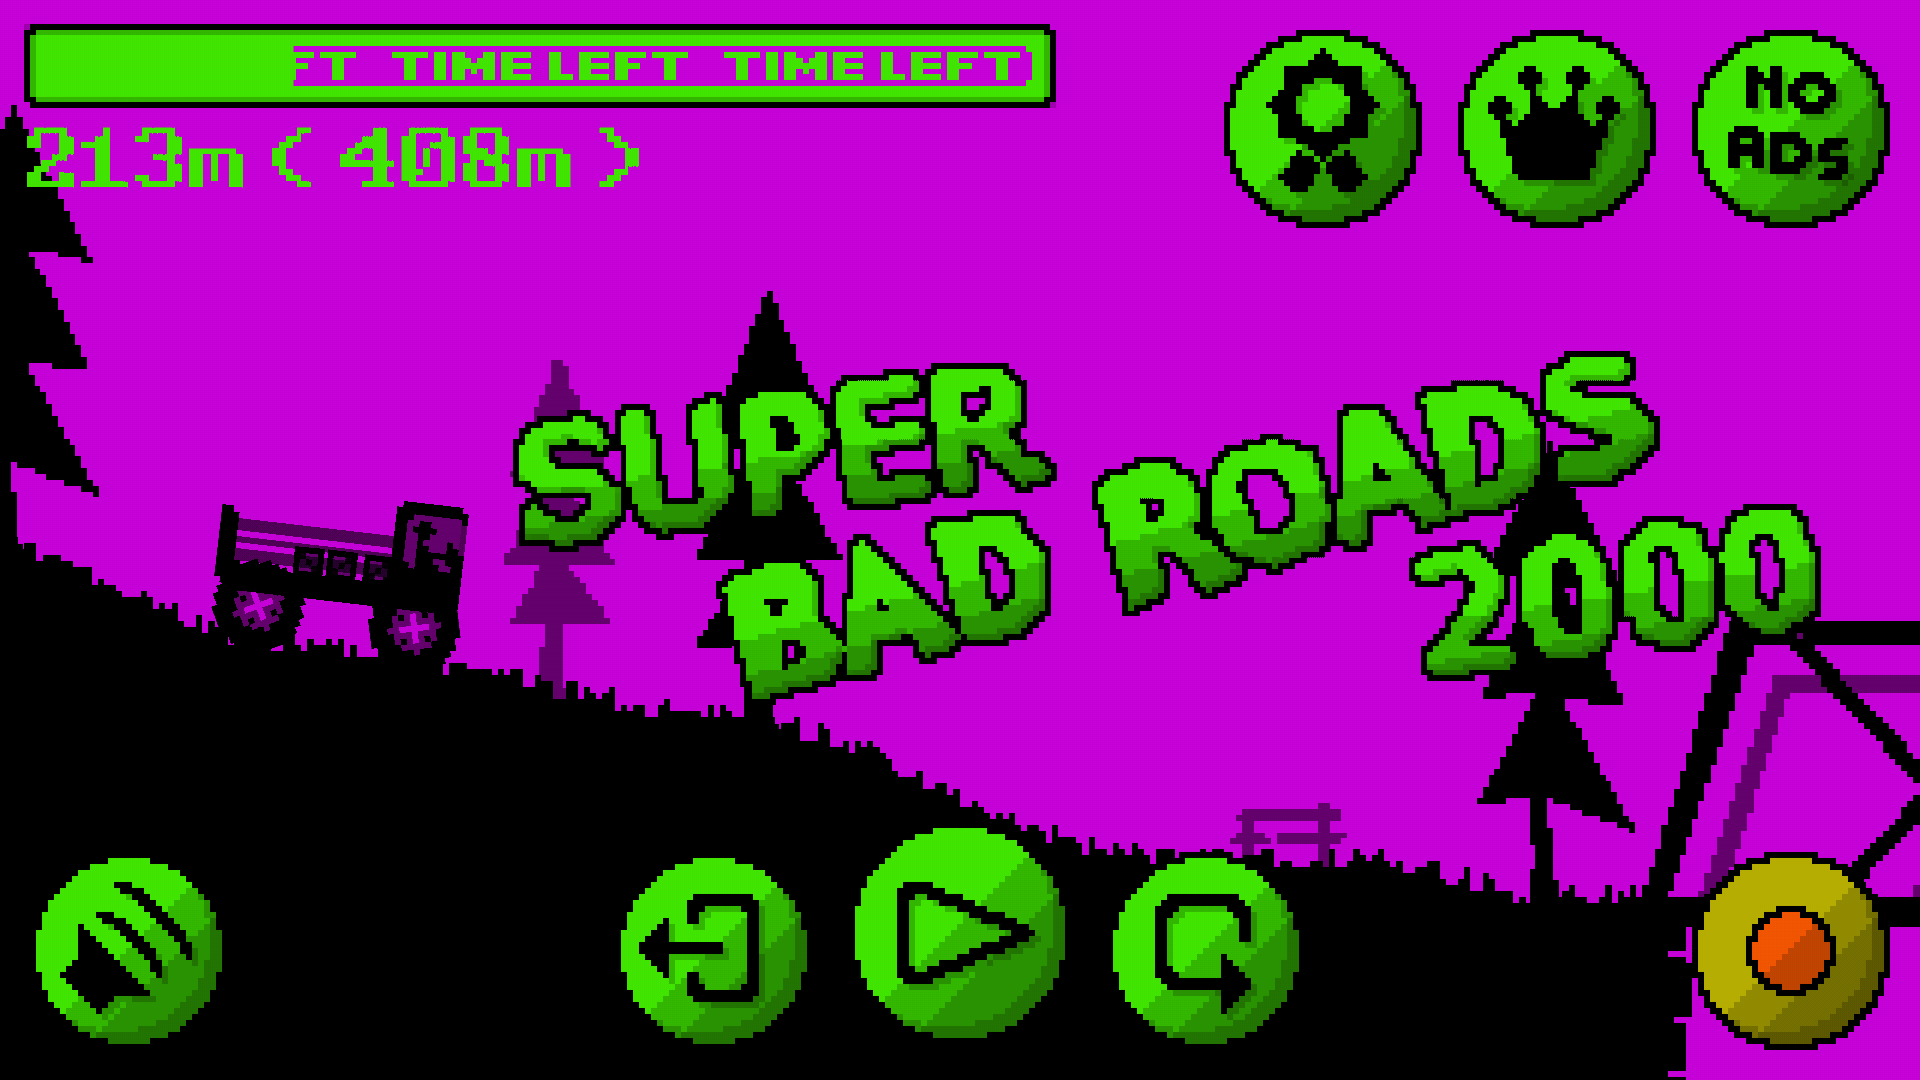 Super Bad Roads 2000遊戲截圖